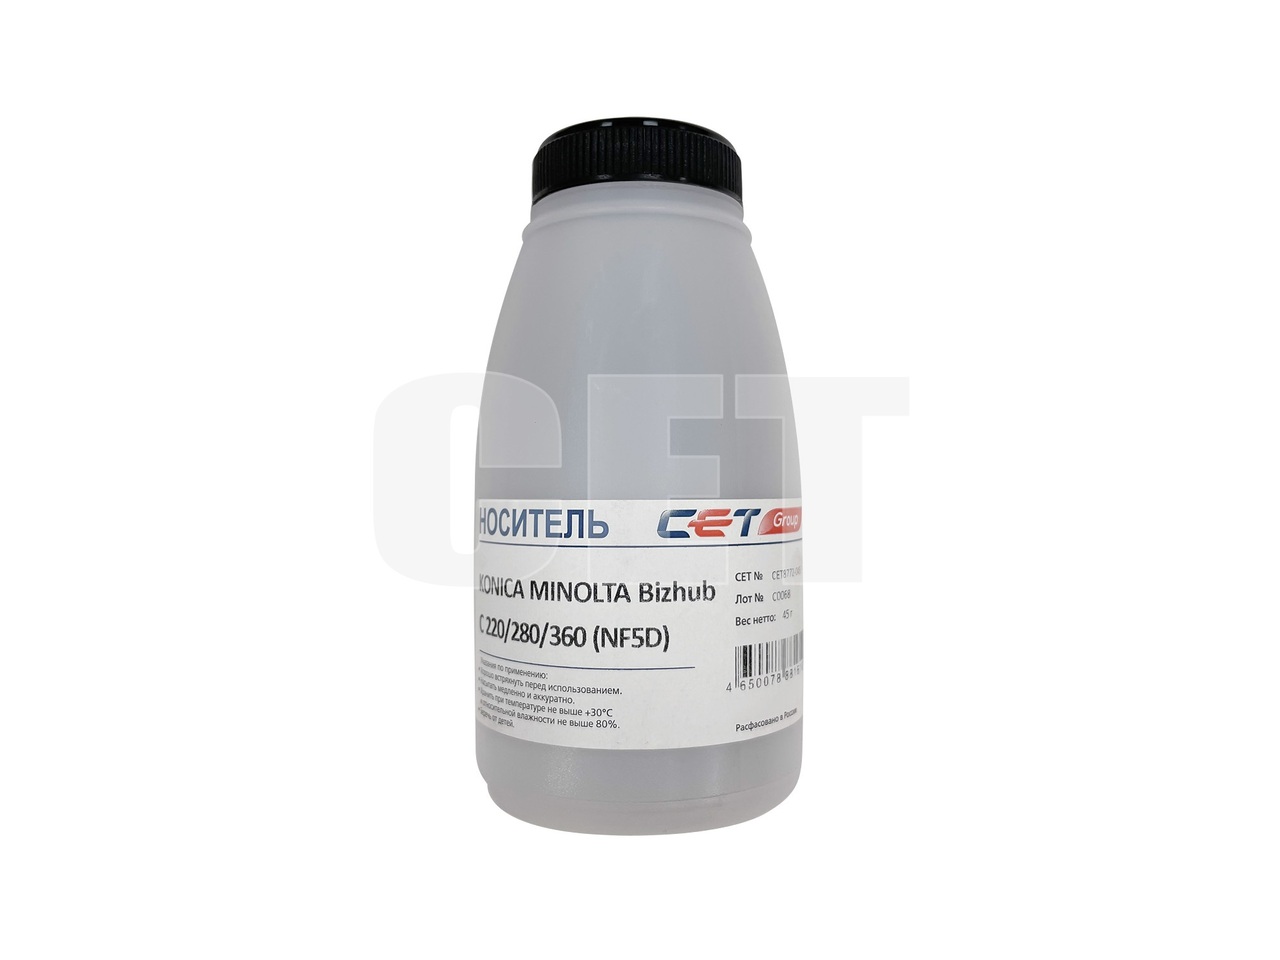 Носитель (девелопер) NF5D для KONICA MINOLTA BizhubC220/280/360 (CET), 45г/бут, CET8772-045